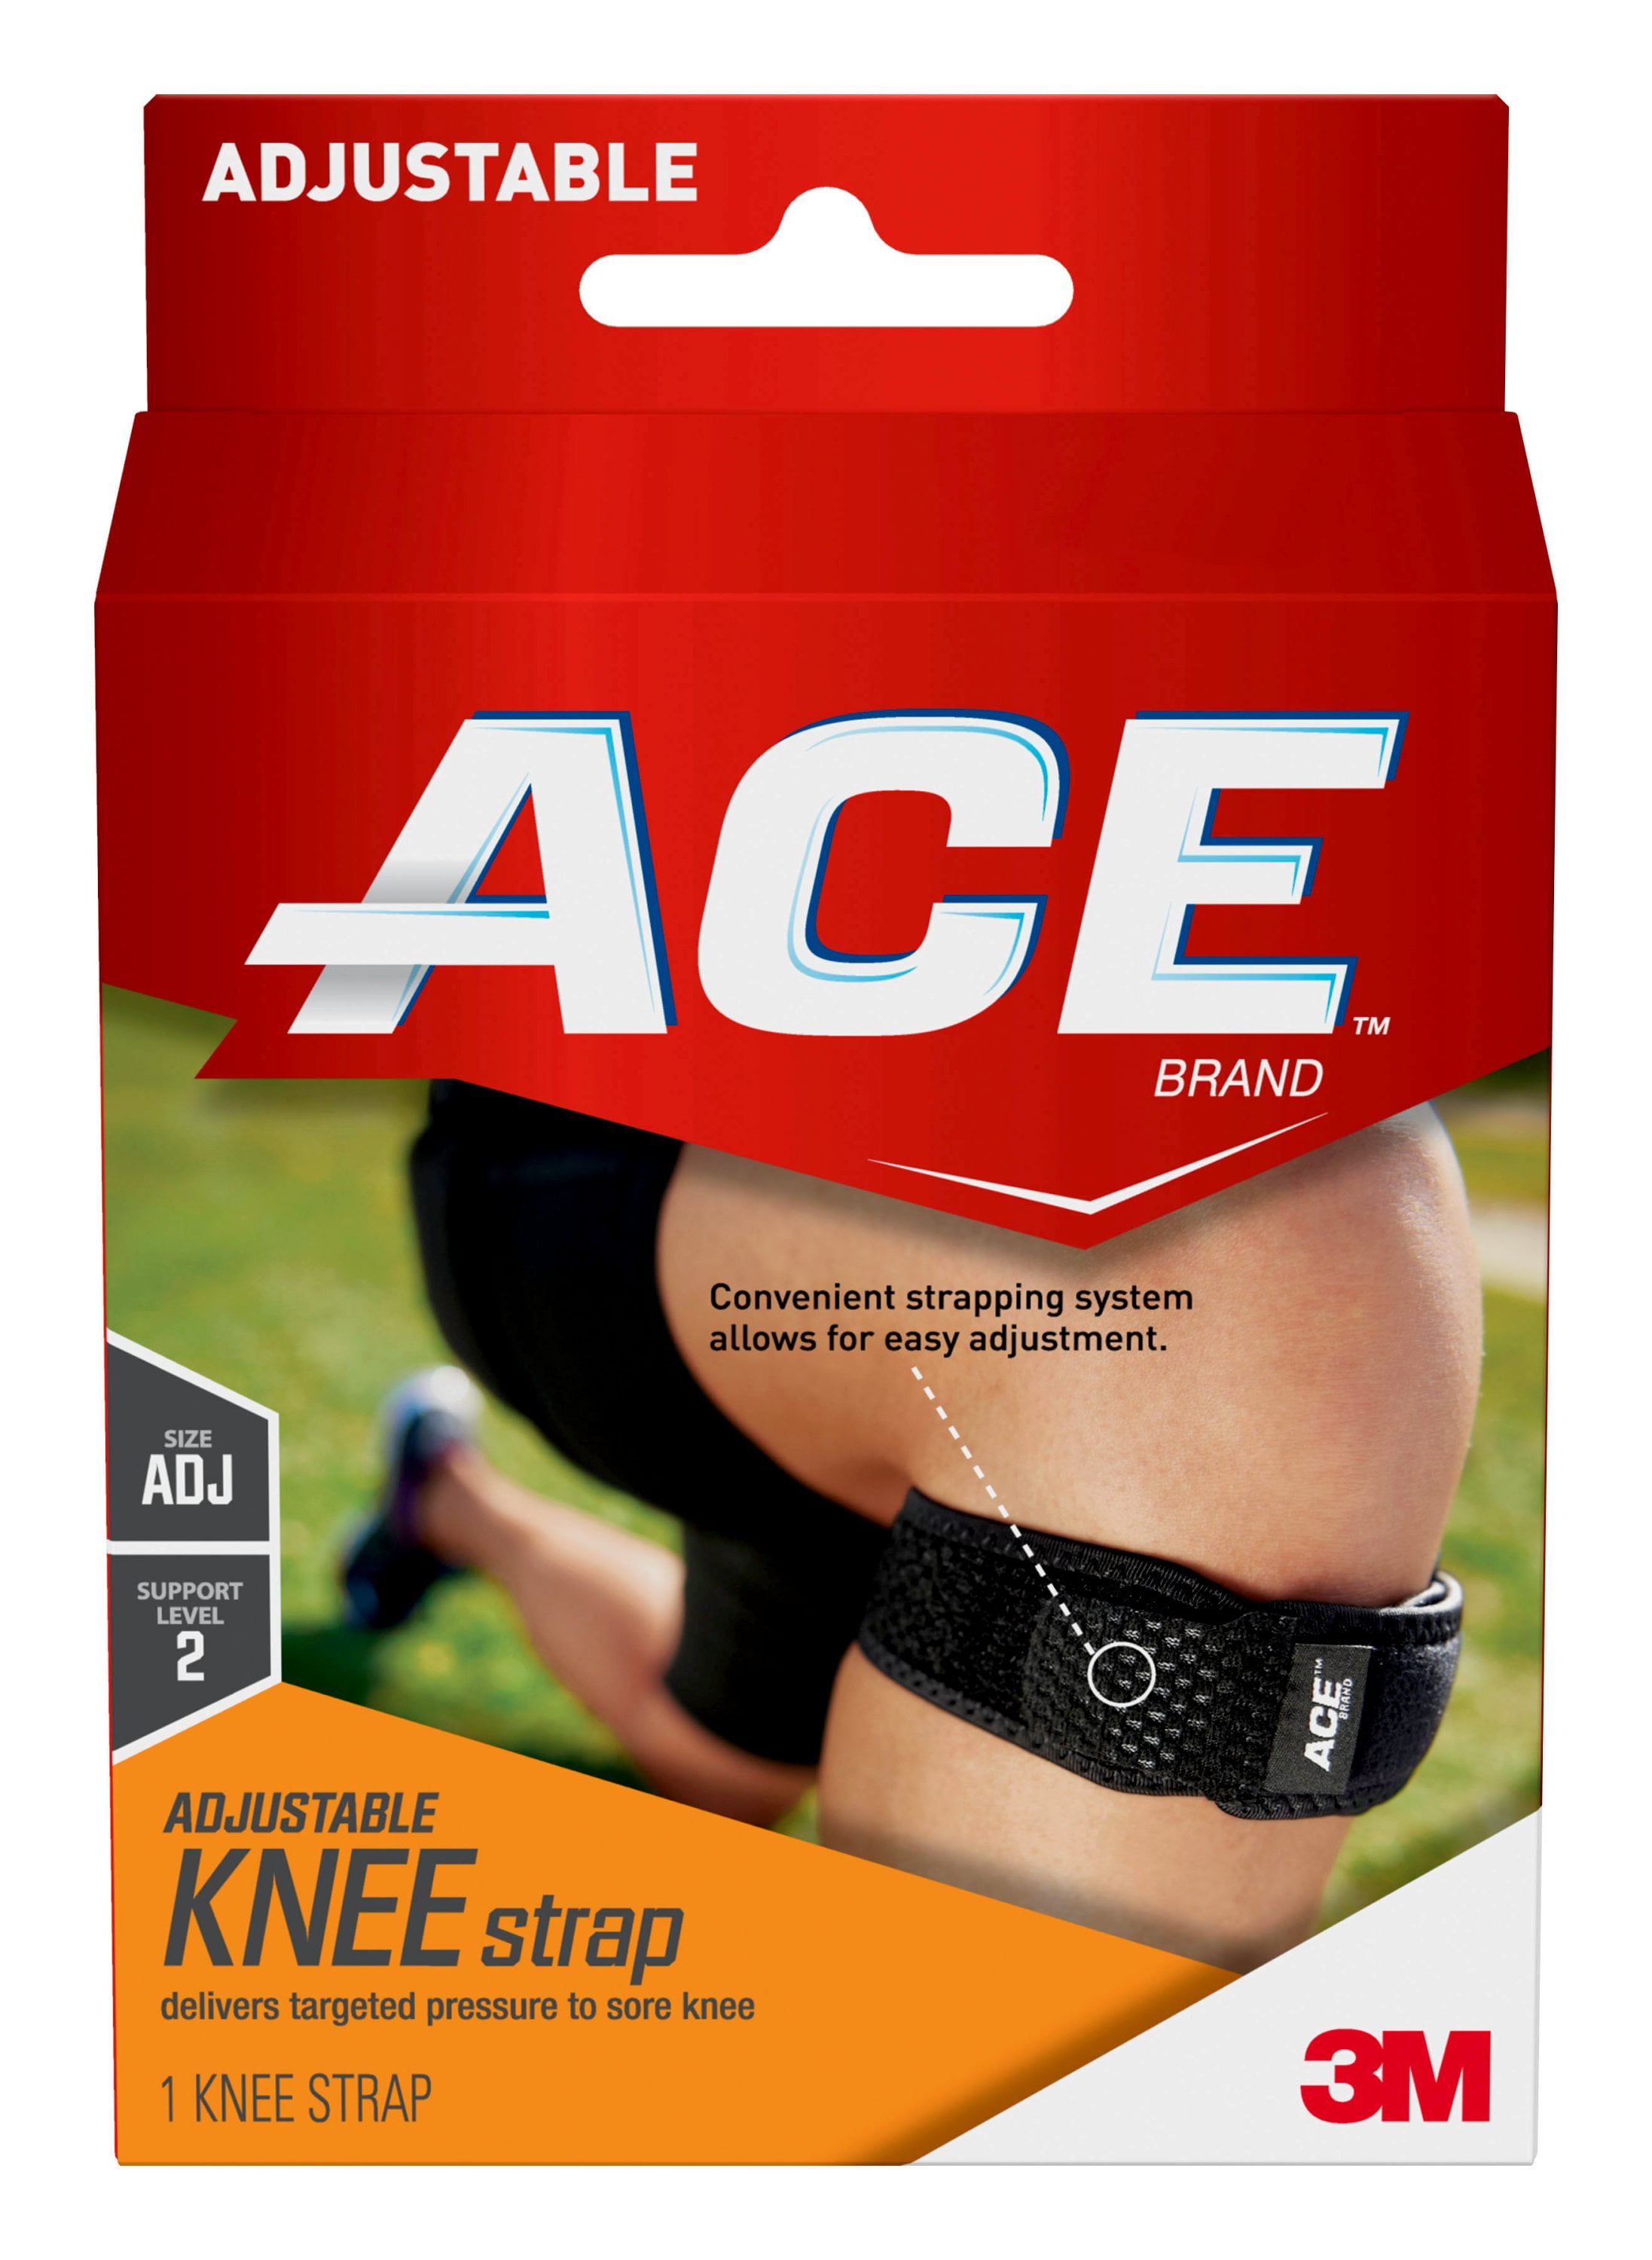 Ace Knee Brace Size Chart